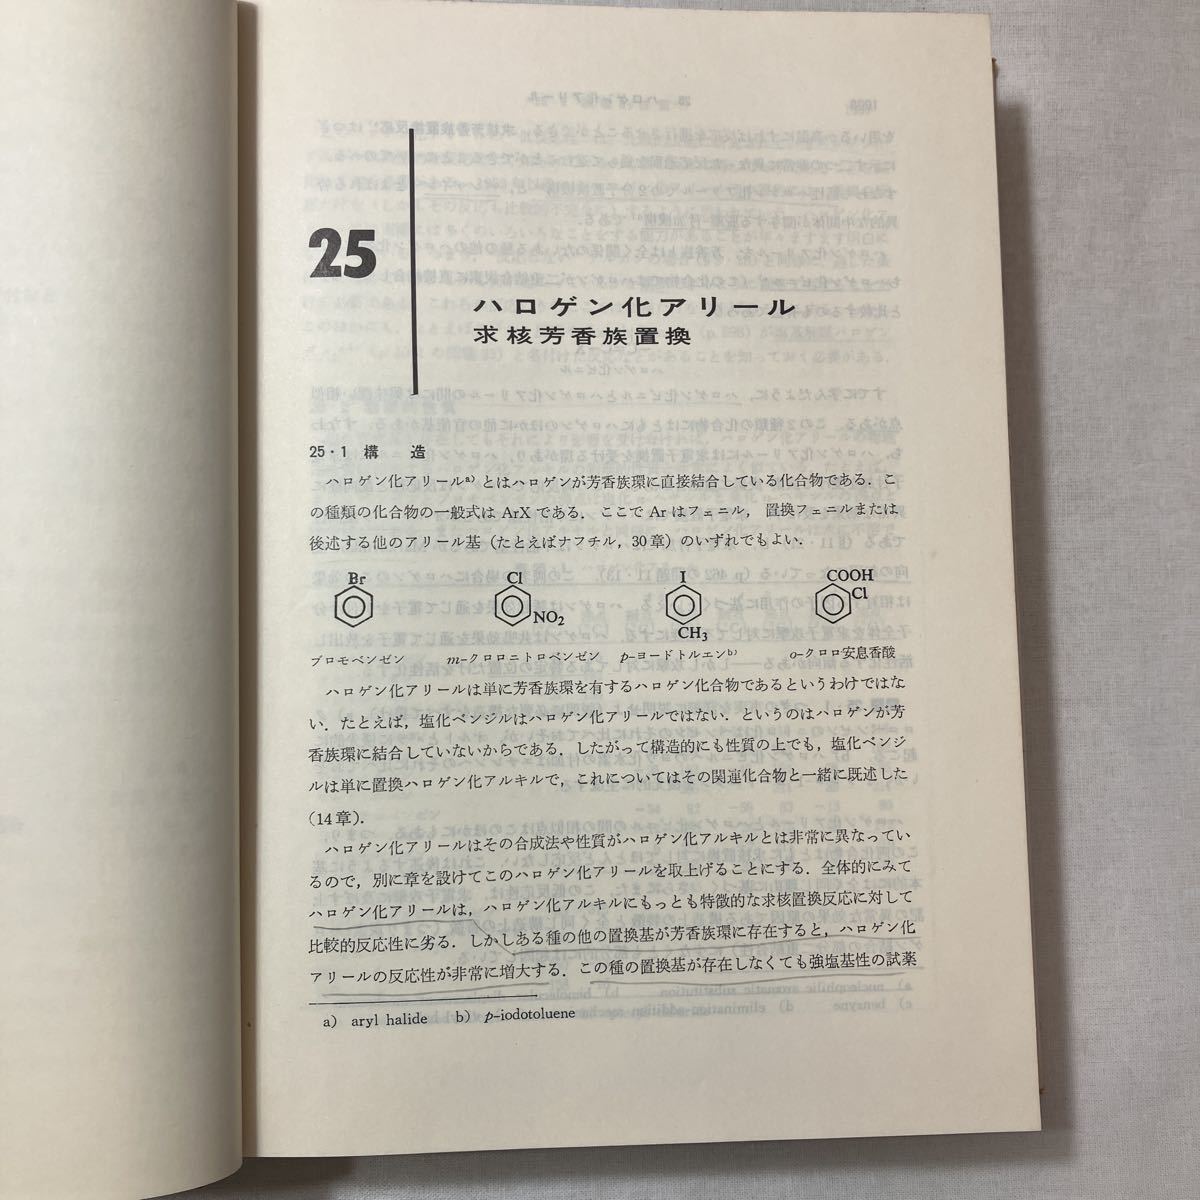 zaa-451♪モリソン, ボイド　有機化学 (下) モリソン (著), ボイド (著), 中西 香爾 (翻訳)　 東京化学同人; 第4版 (1979/9/10)